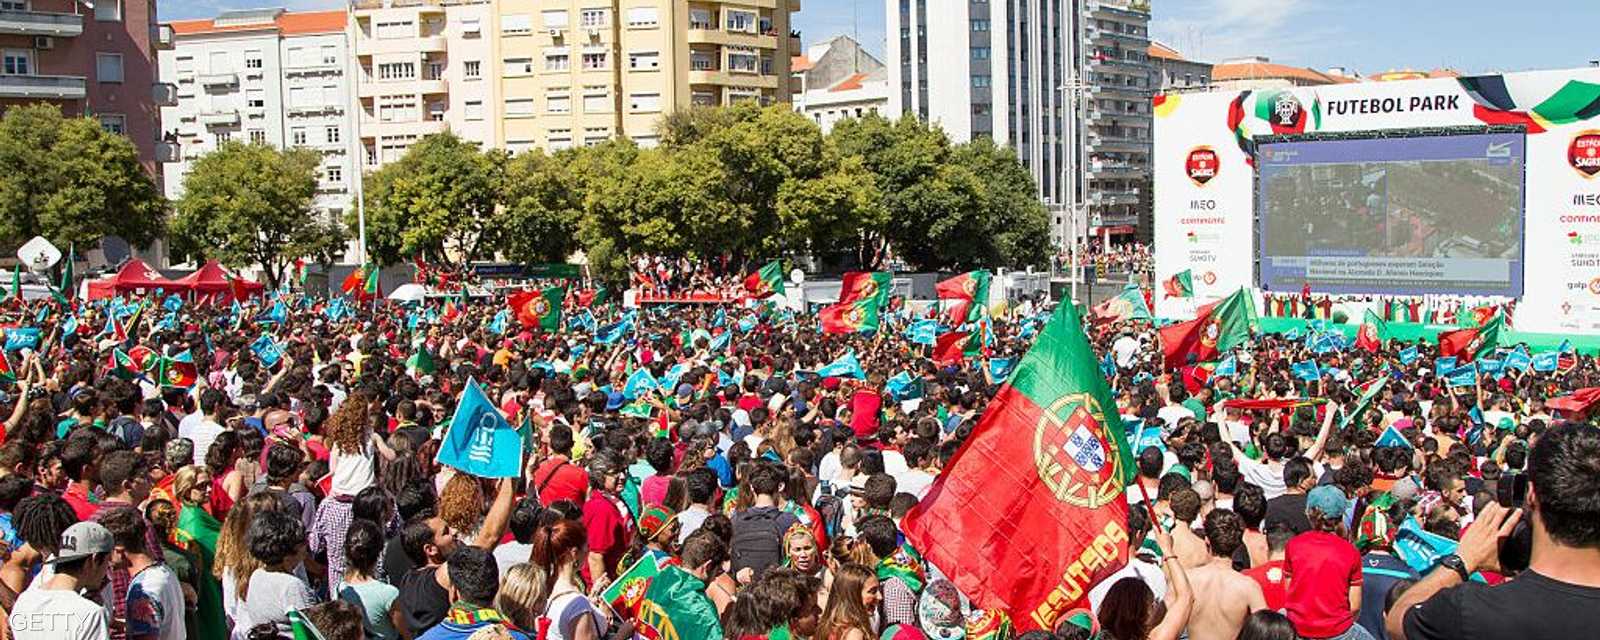 آلاف الجماهير البرتغالية حضرت للاحتفال مع لاعبي المنتخب بلقب اليورو